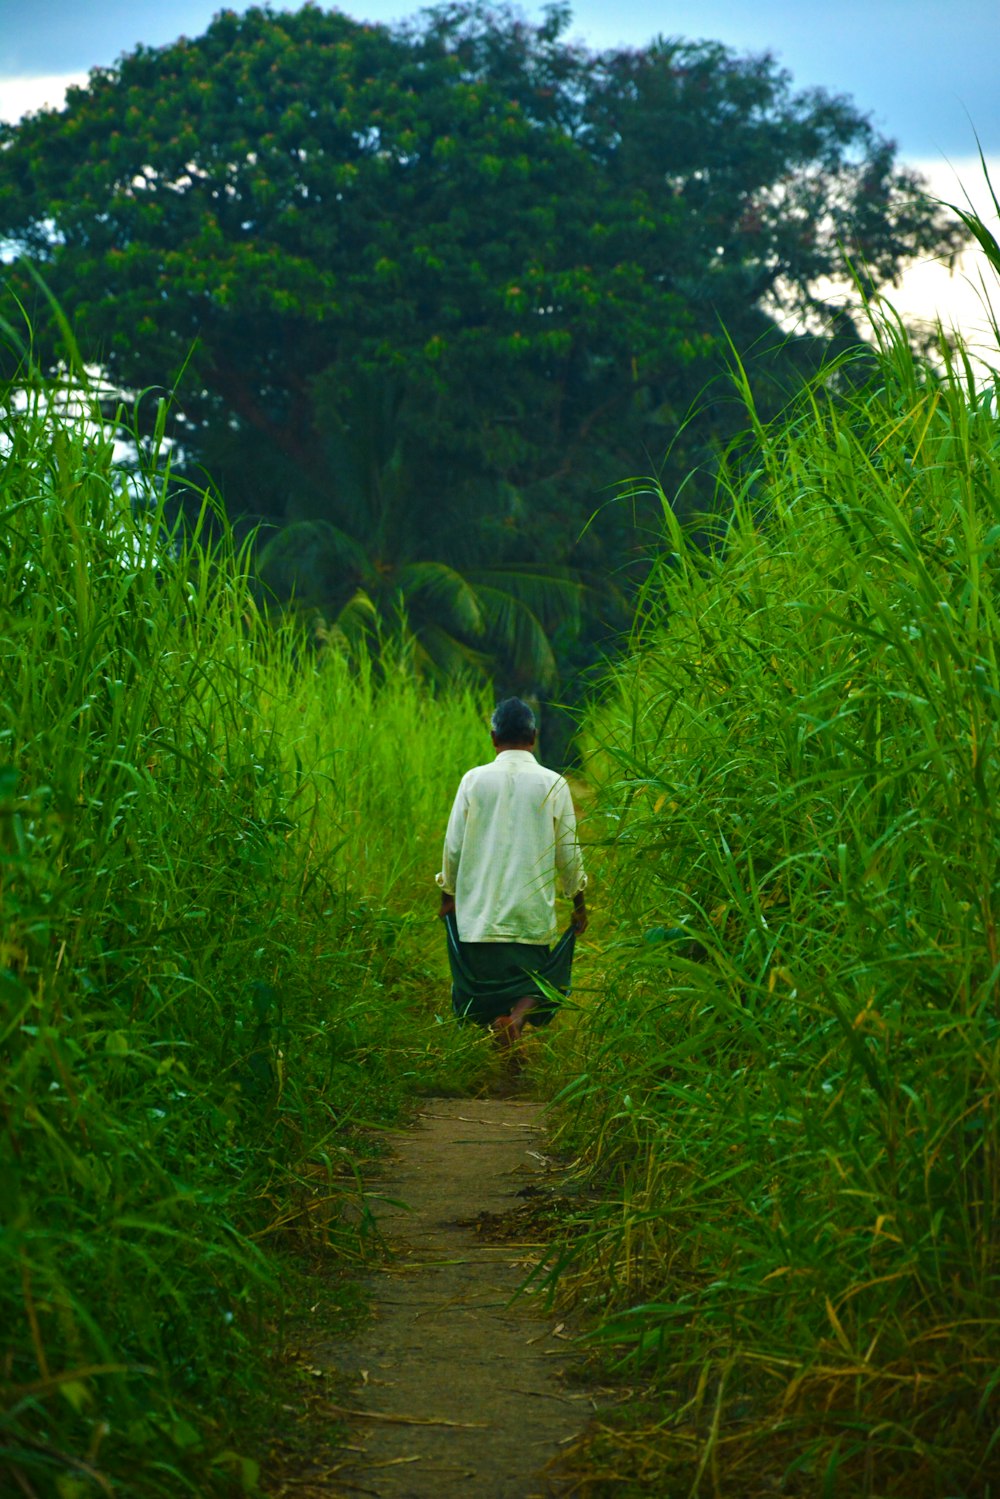 a man walking down a path through tall grass